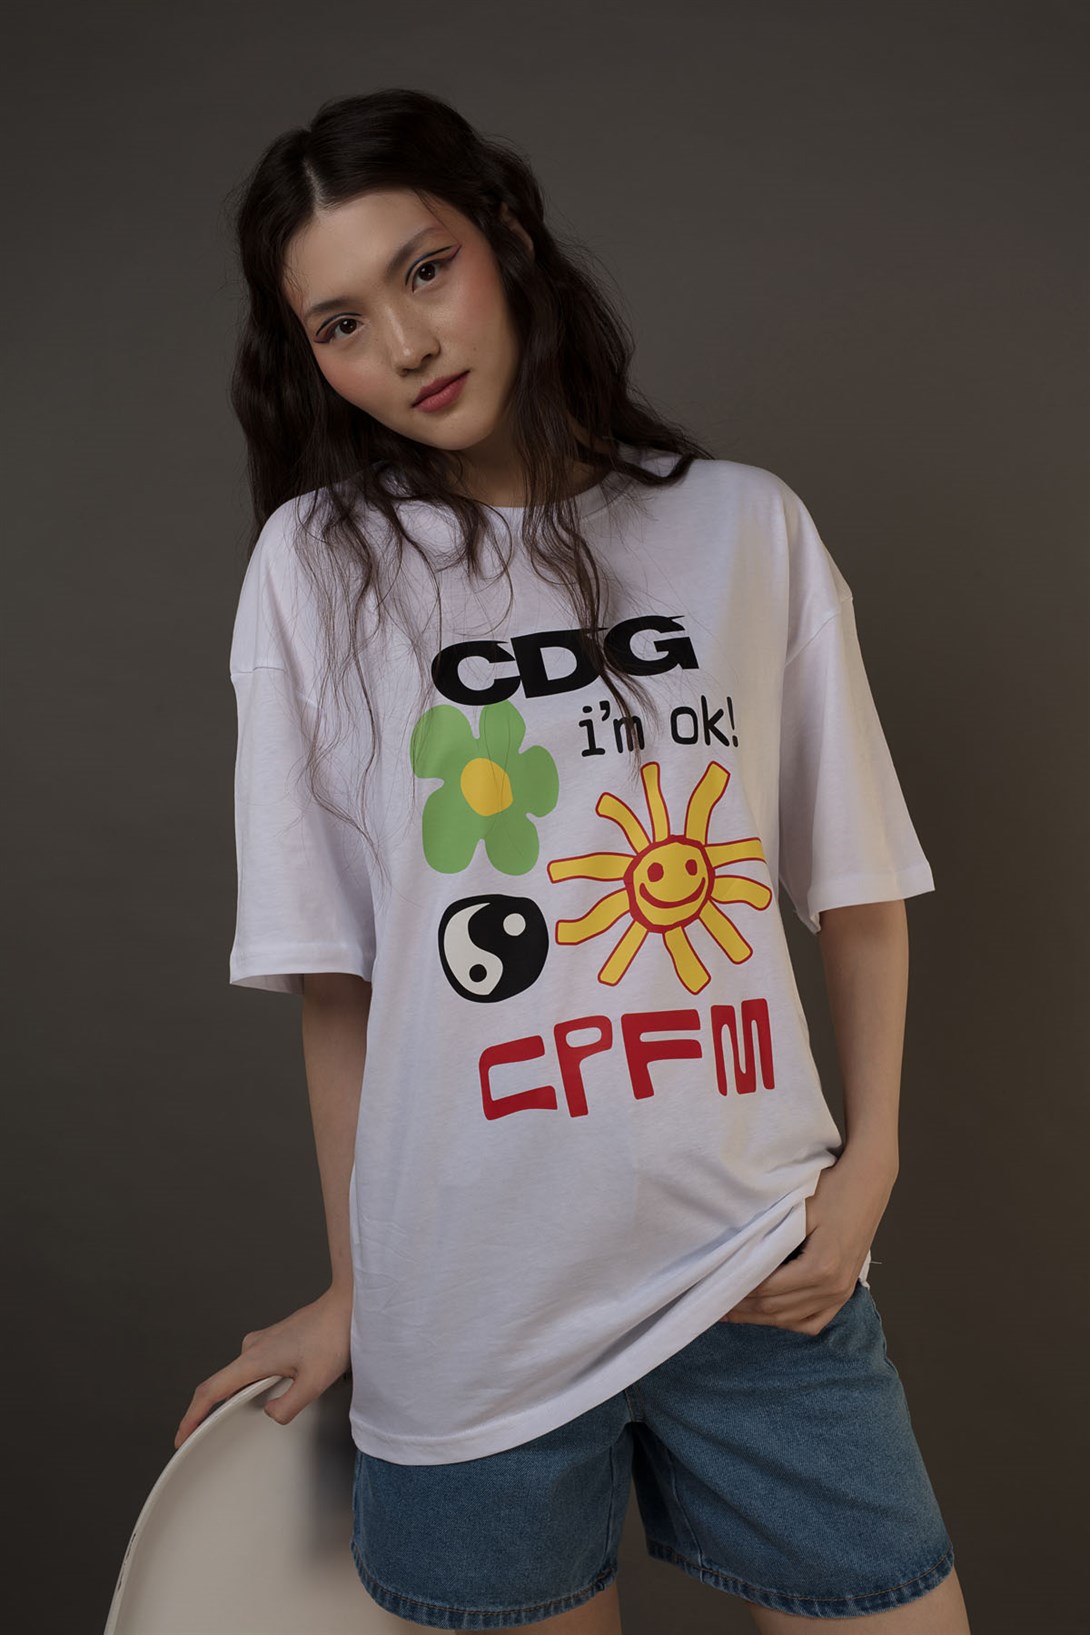 Trendiz Unisex CDG i'm ok! CPFM Beyaz Tshirt